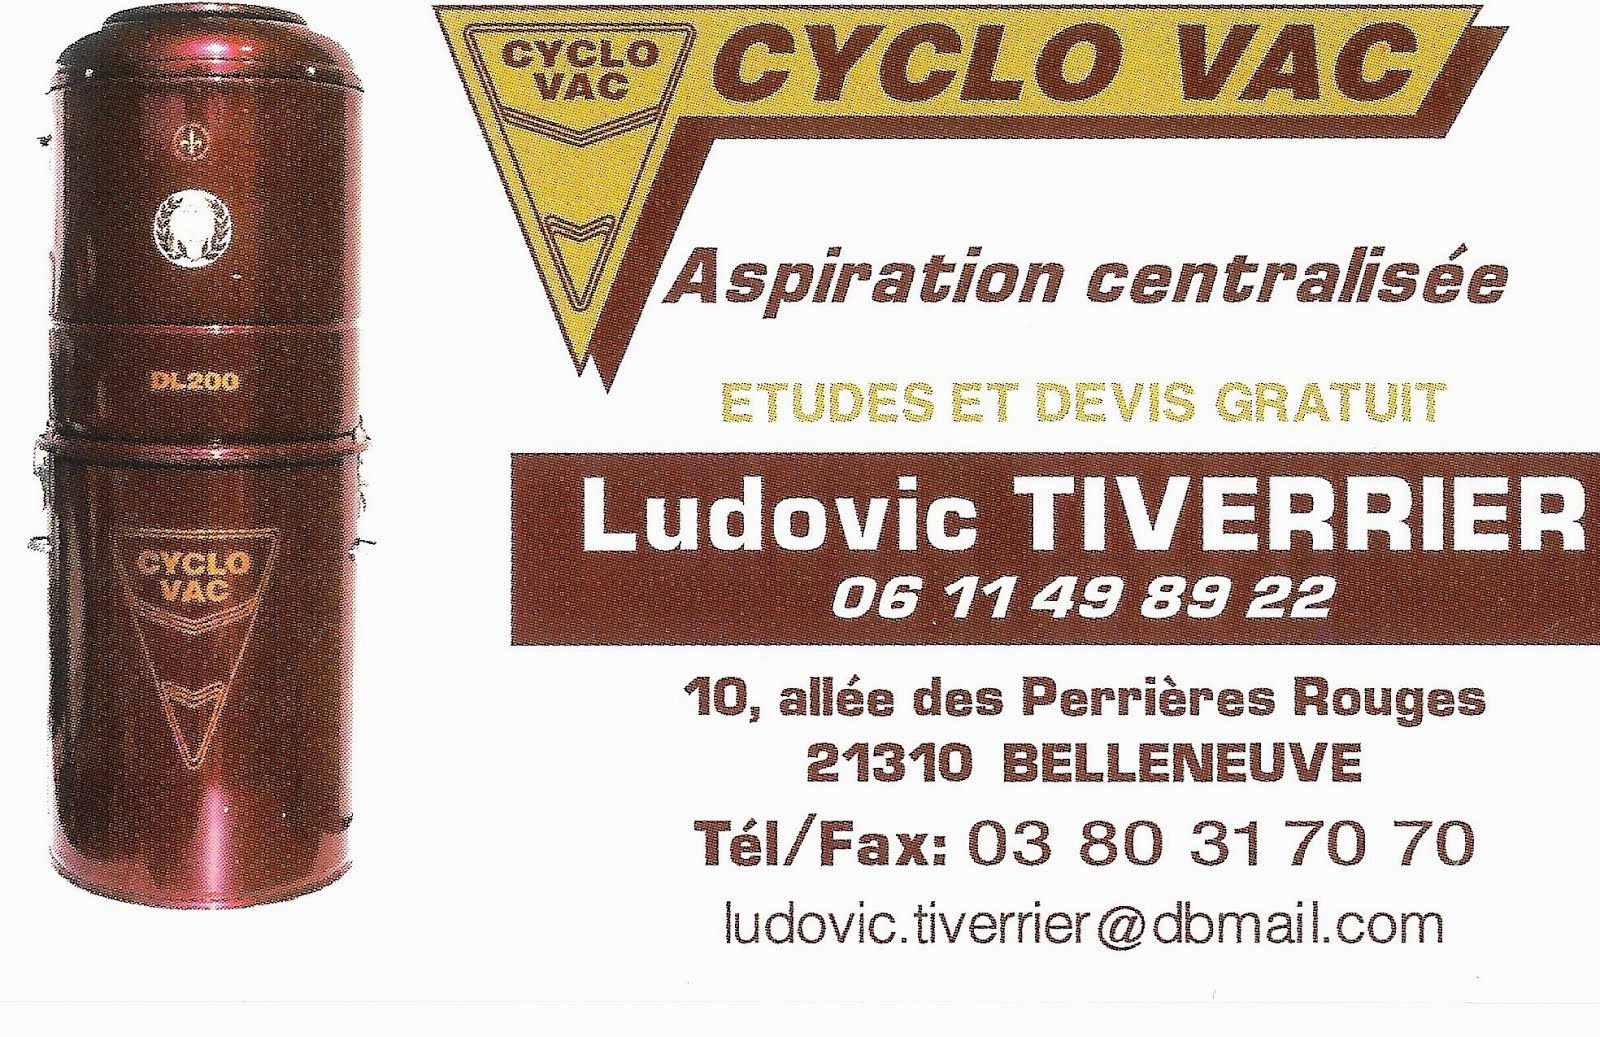 Cyclo Vac